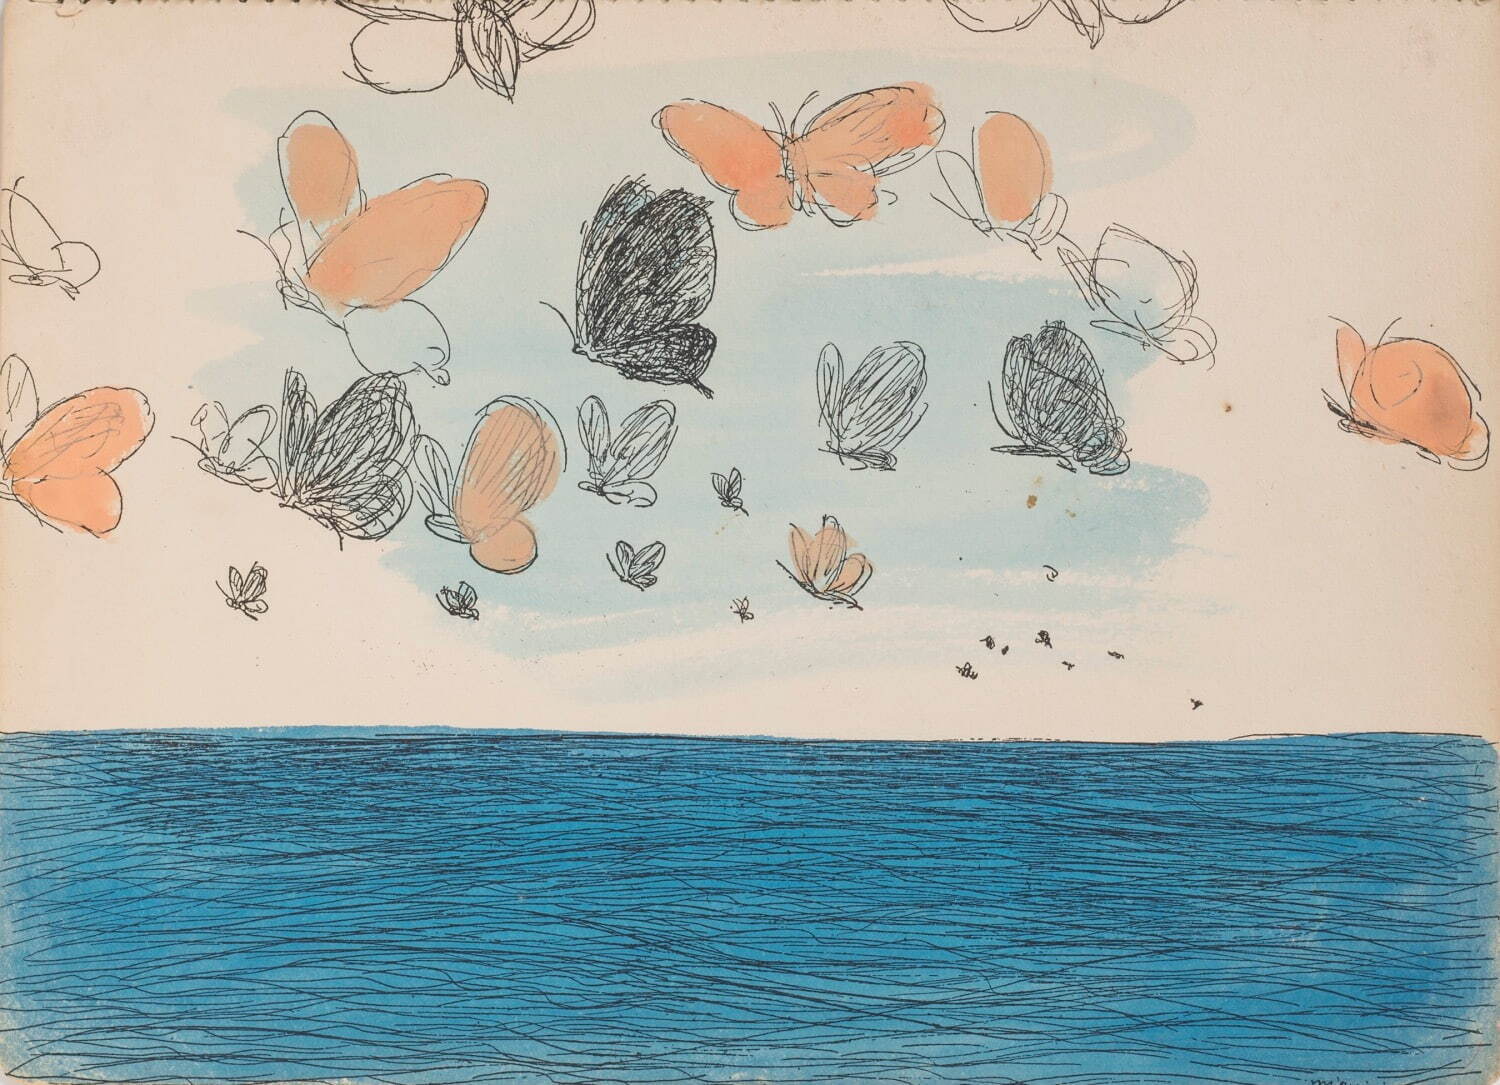 三岸好太郎 《海洋を渡る蝶》 筆彩素描集『蝶と貝殻』より
昭和9年(1934年) 北海道立三岸好太郎美術館蔵